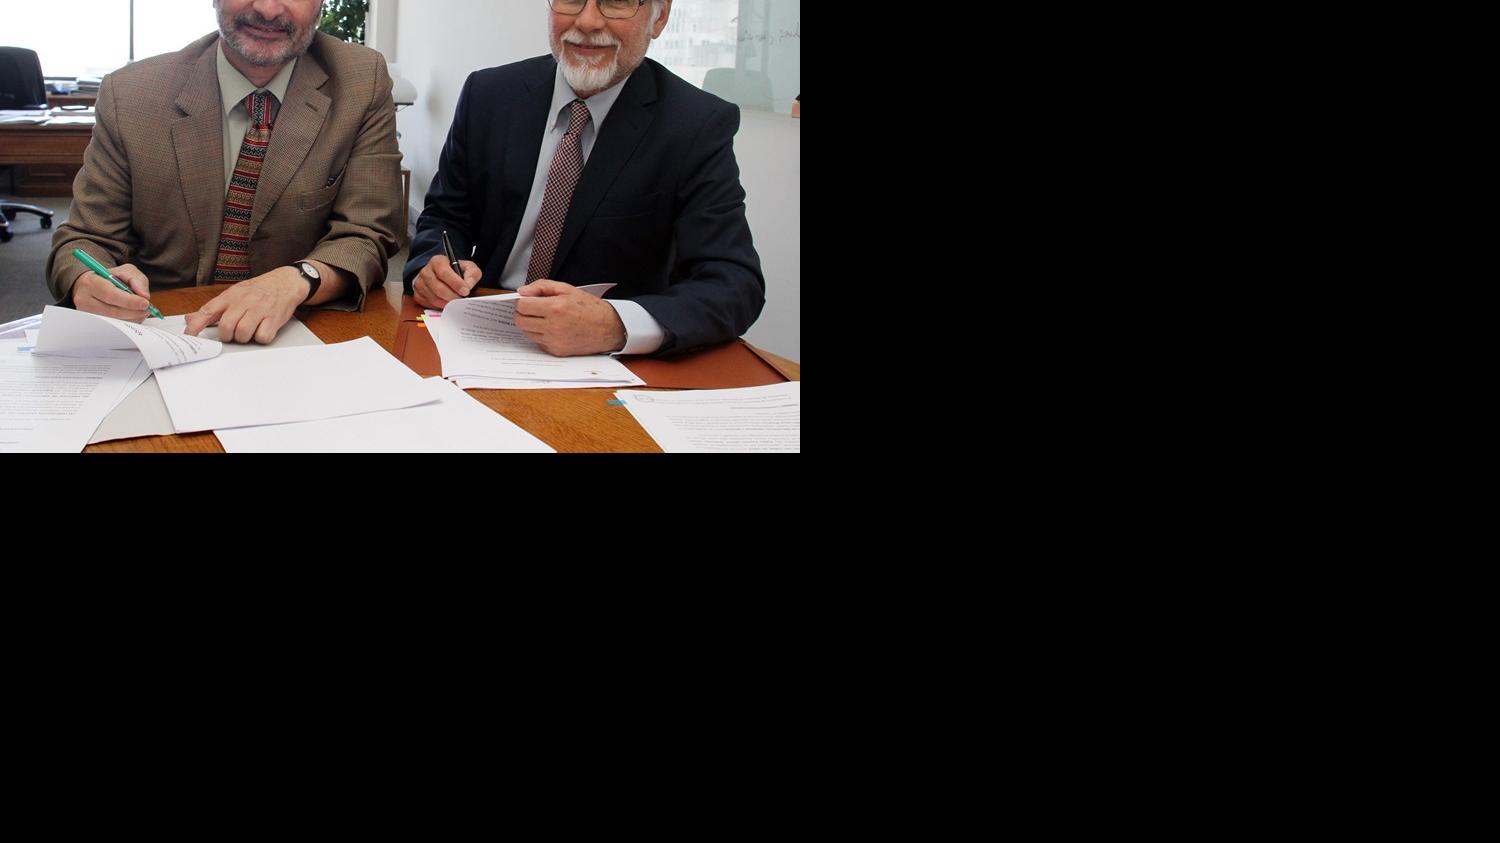 Director de la Dibam y Vicepresidente de Asuntos Corporativos y Sutentabilidad de Codelco firman convenio para conservación del patrimonio